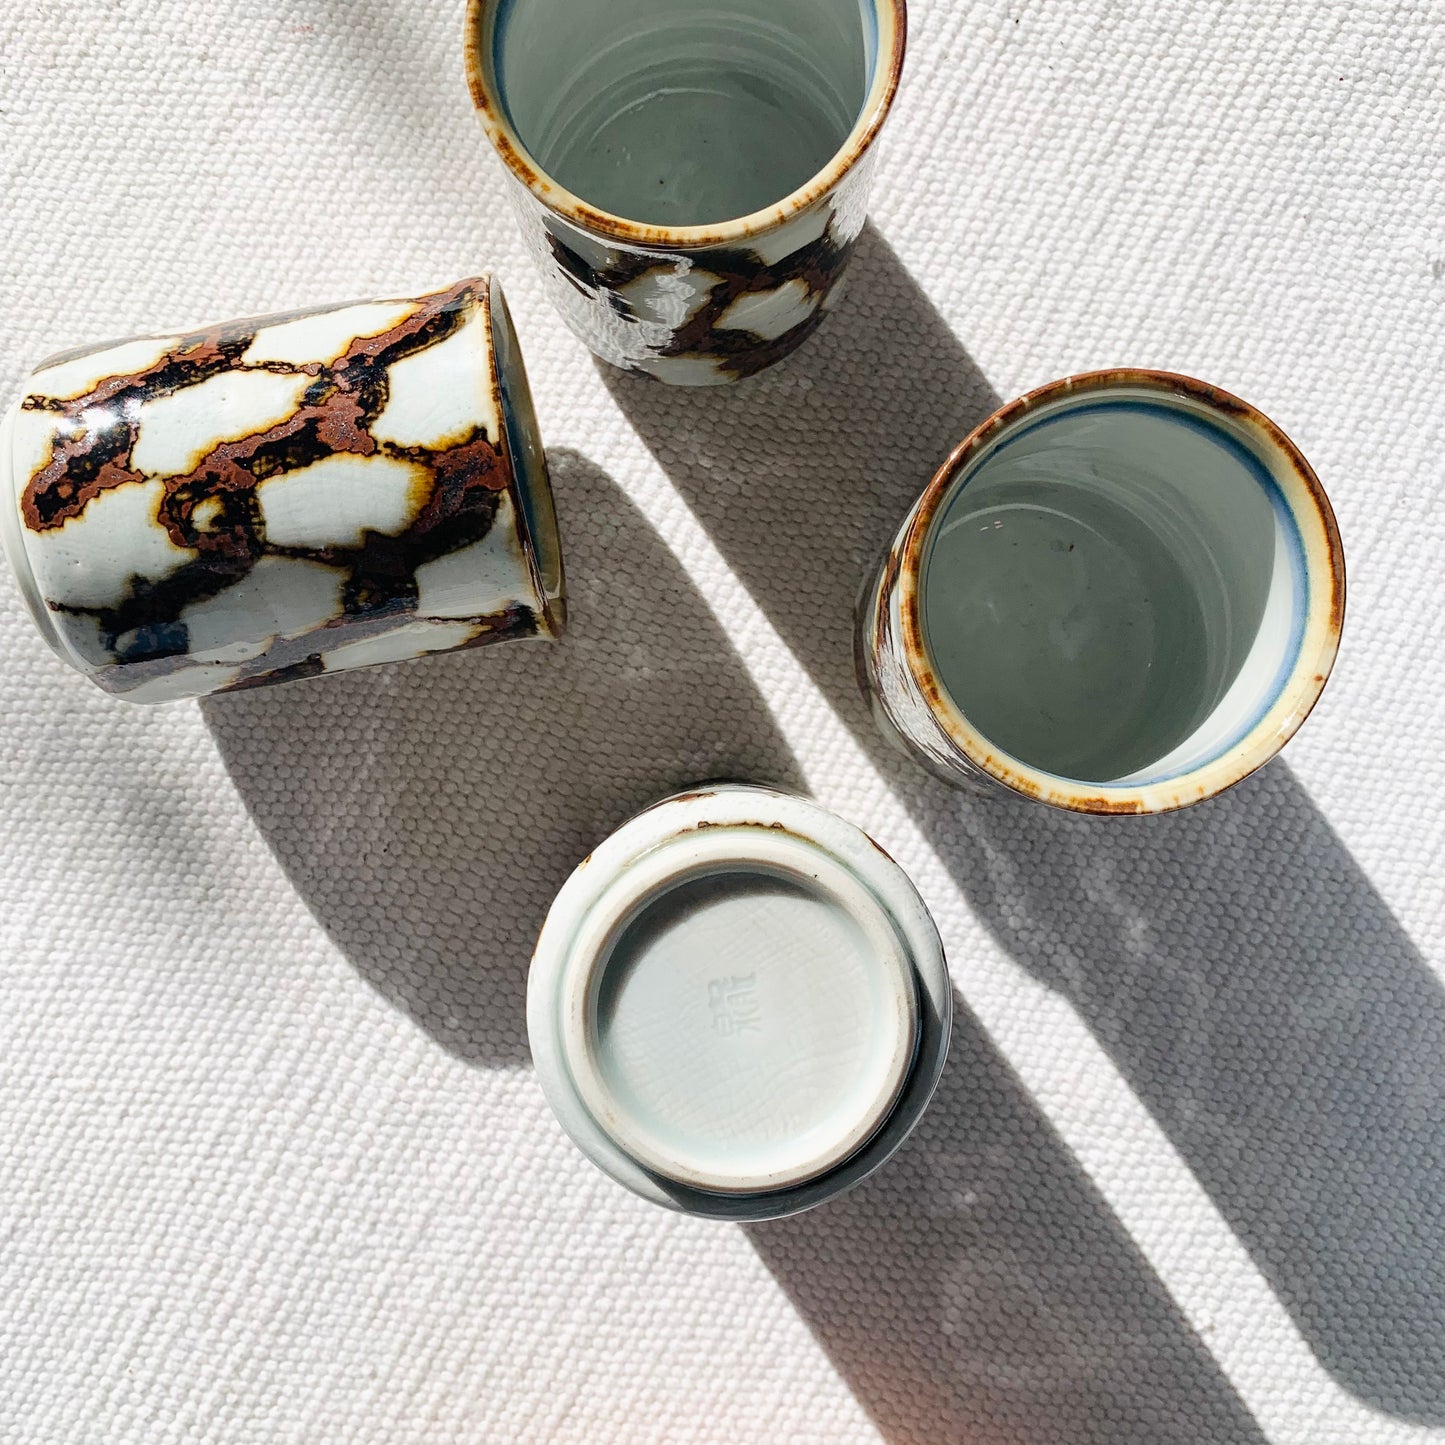 Pattern Tea Cups